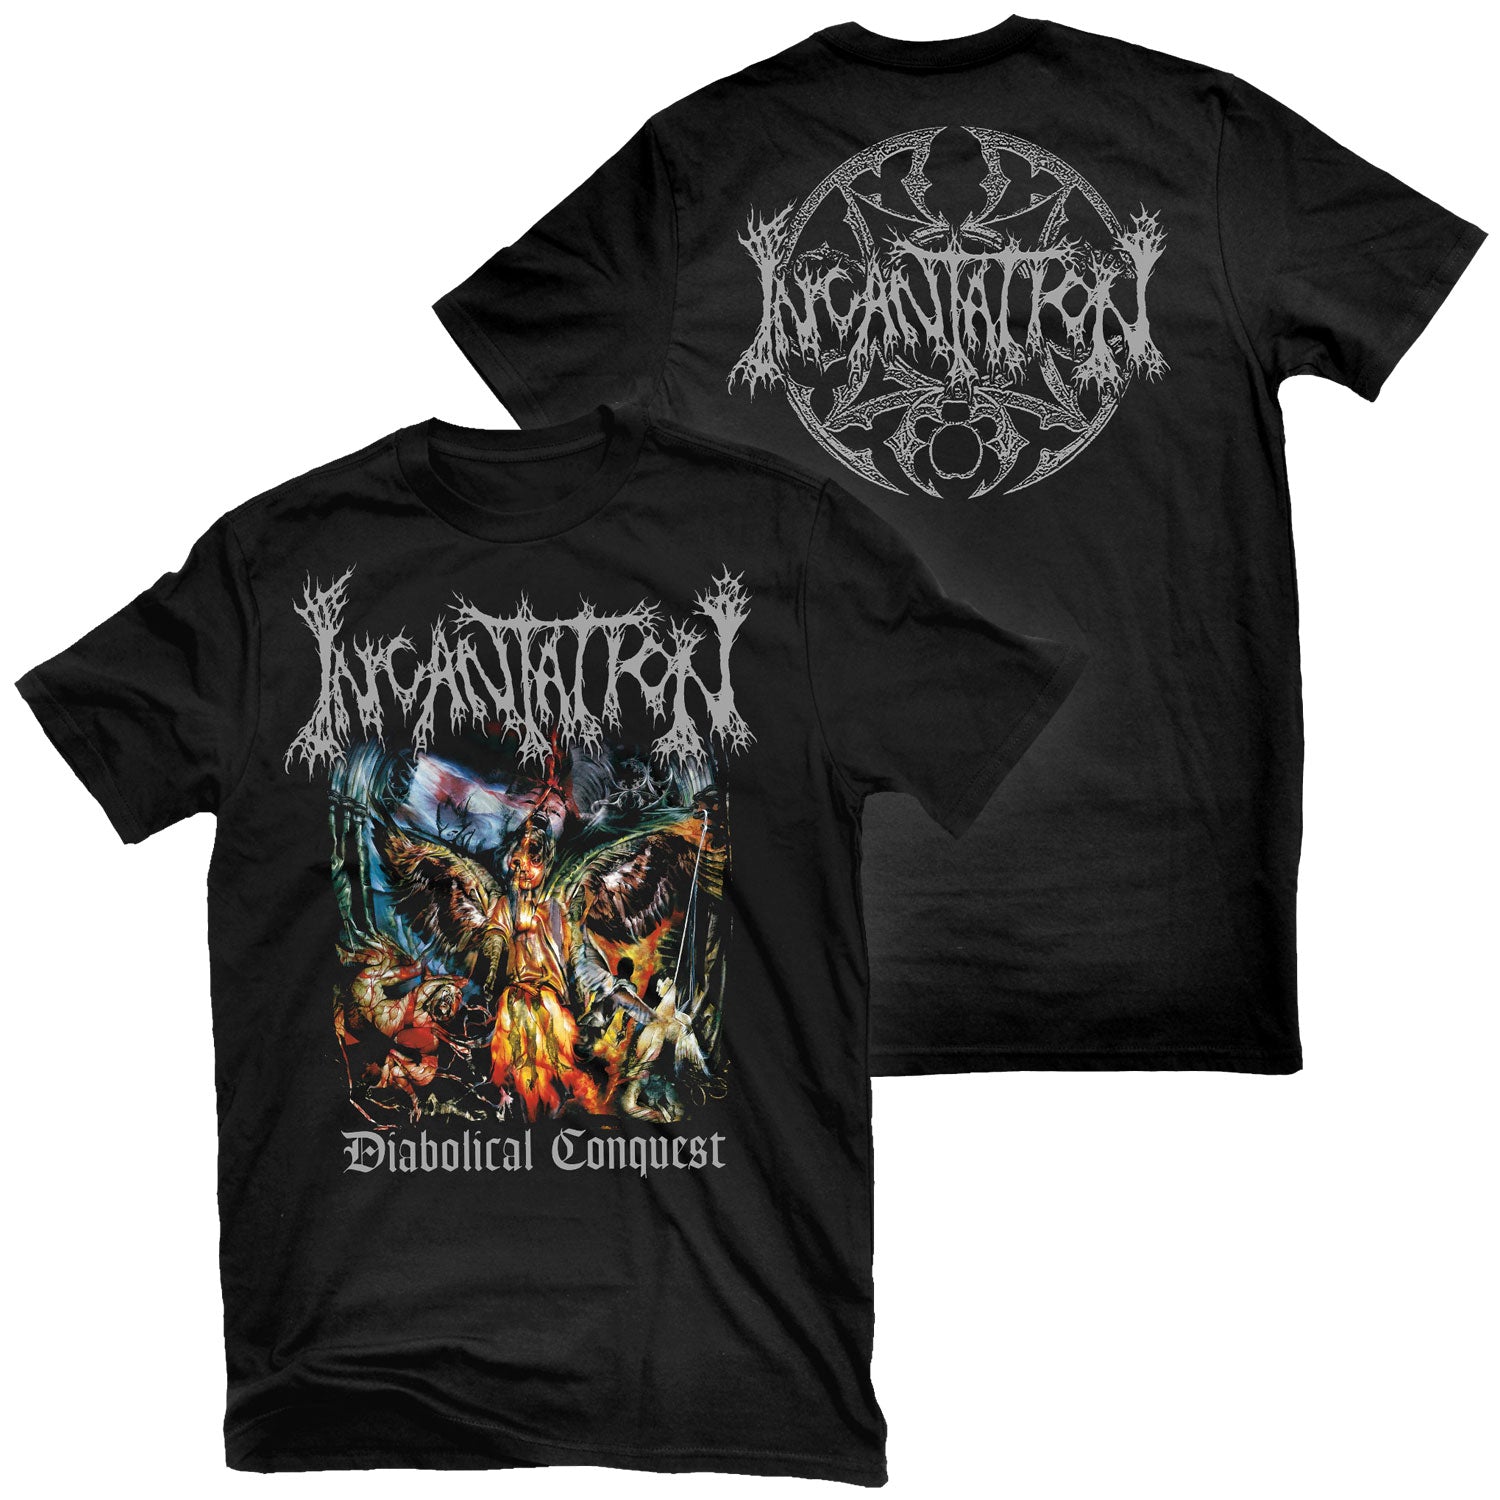 Incantation "Diabolical Conquest" T-Shirt